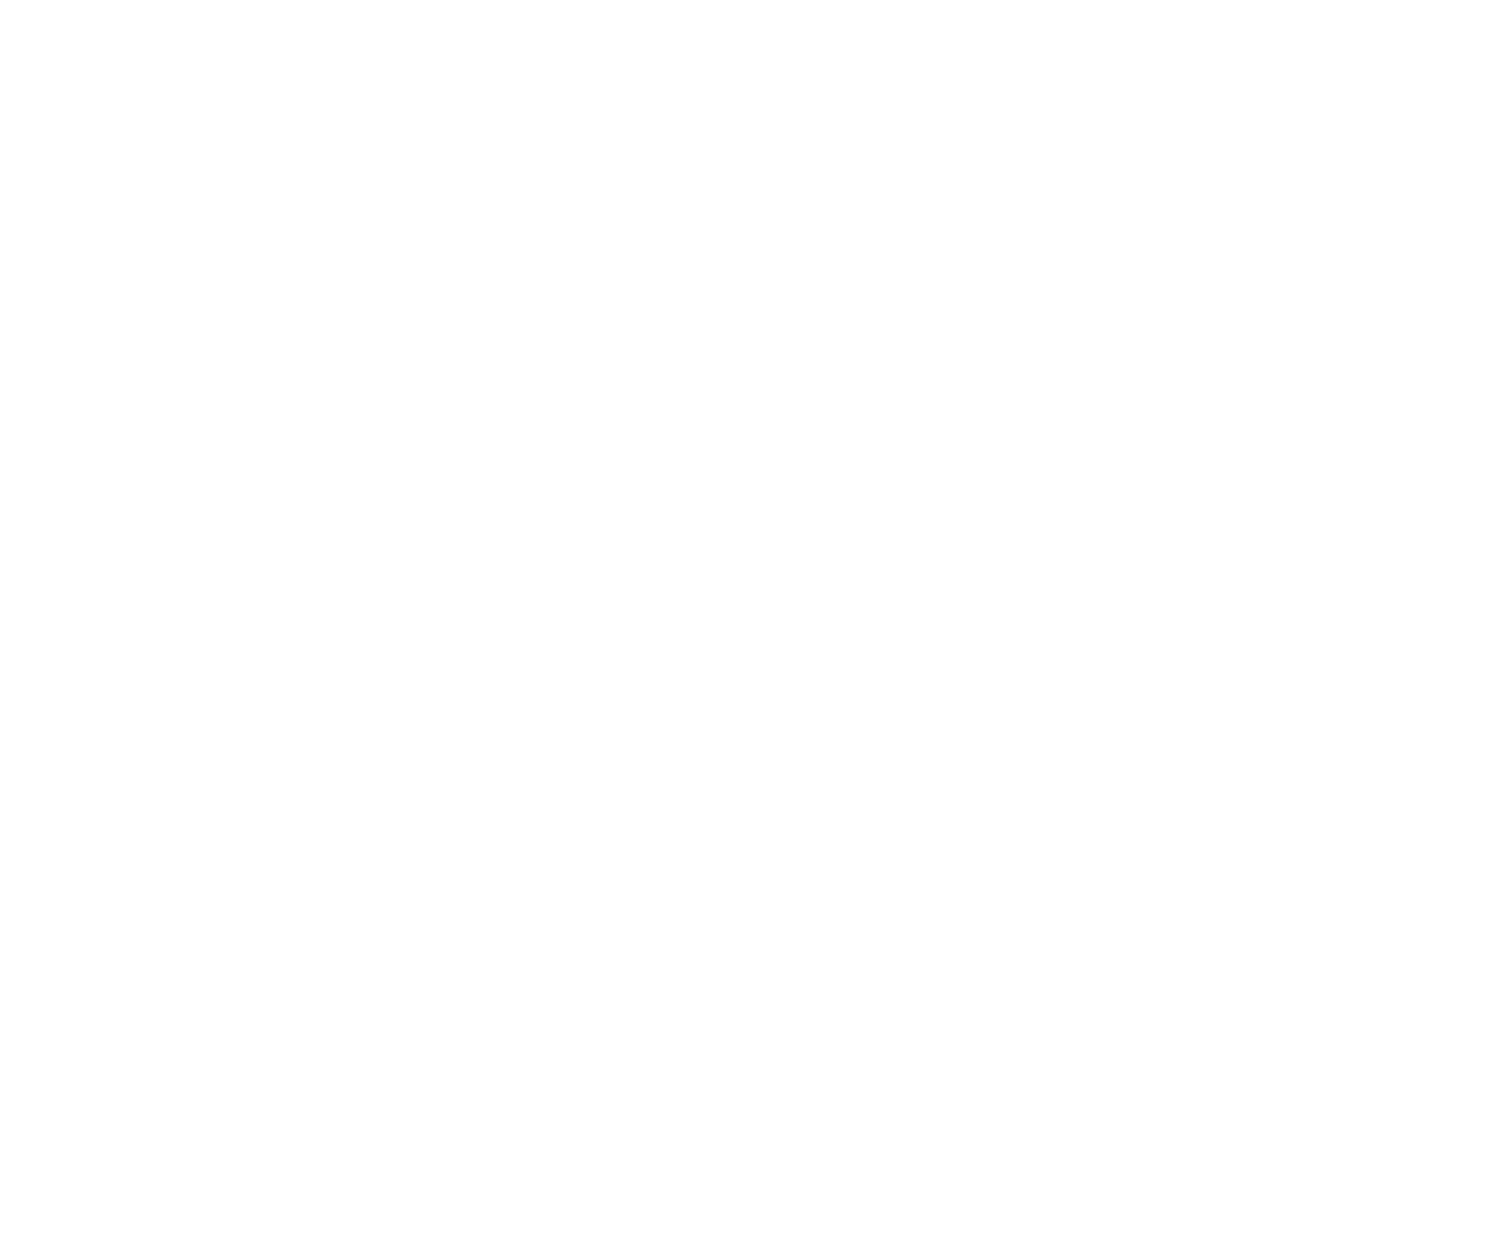 Colt 45 Productions